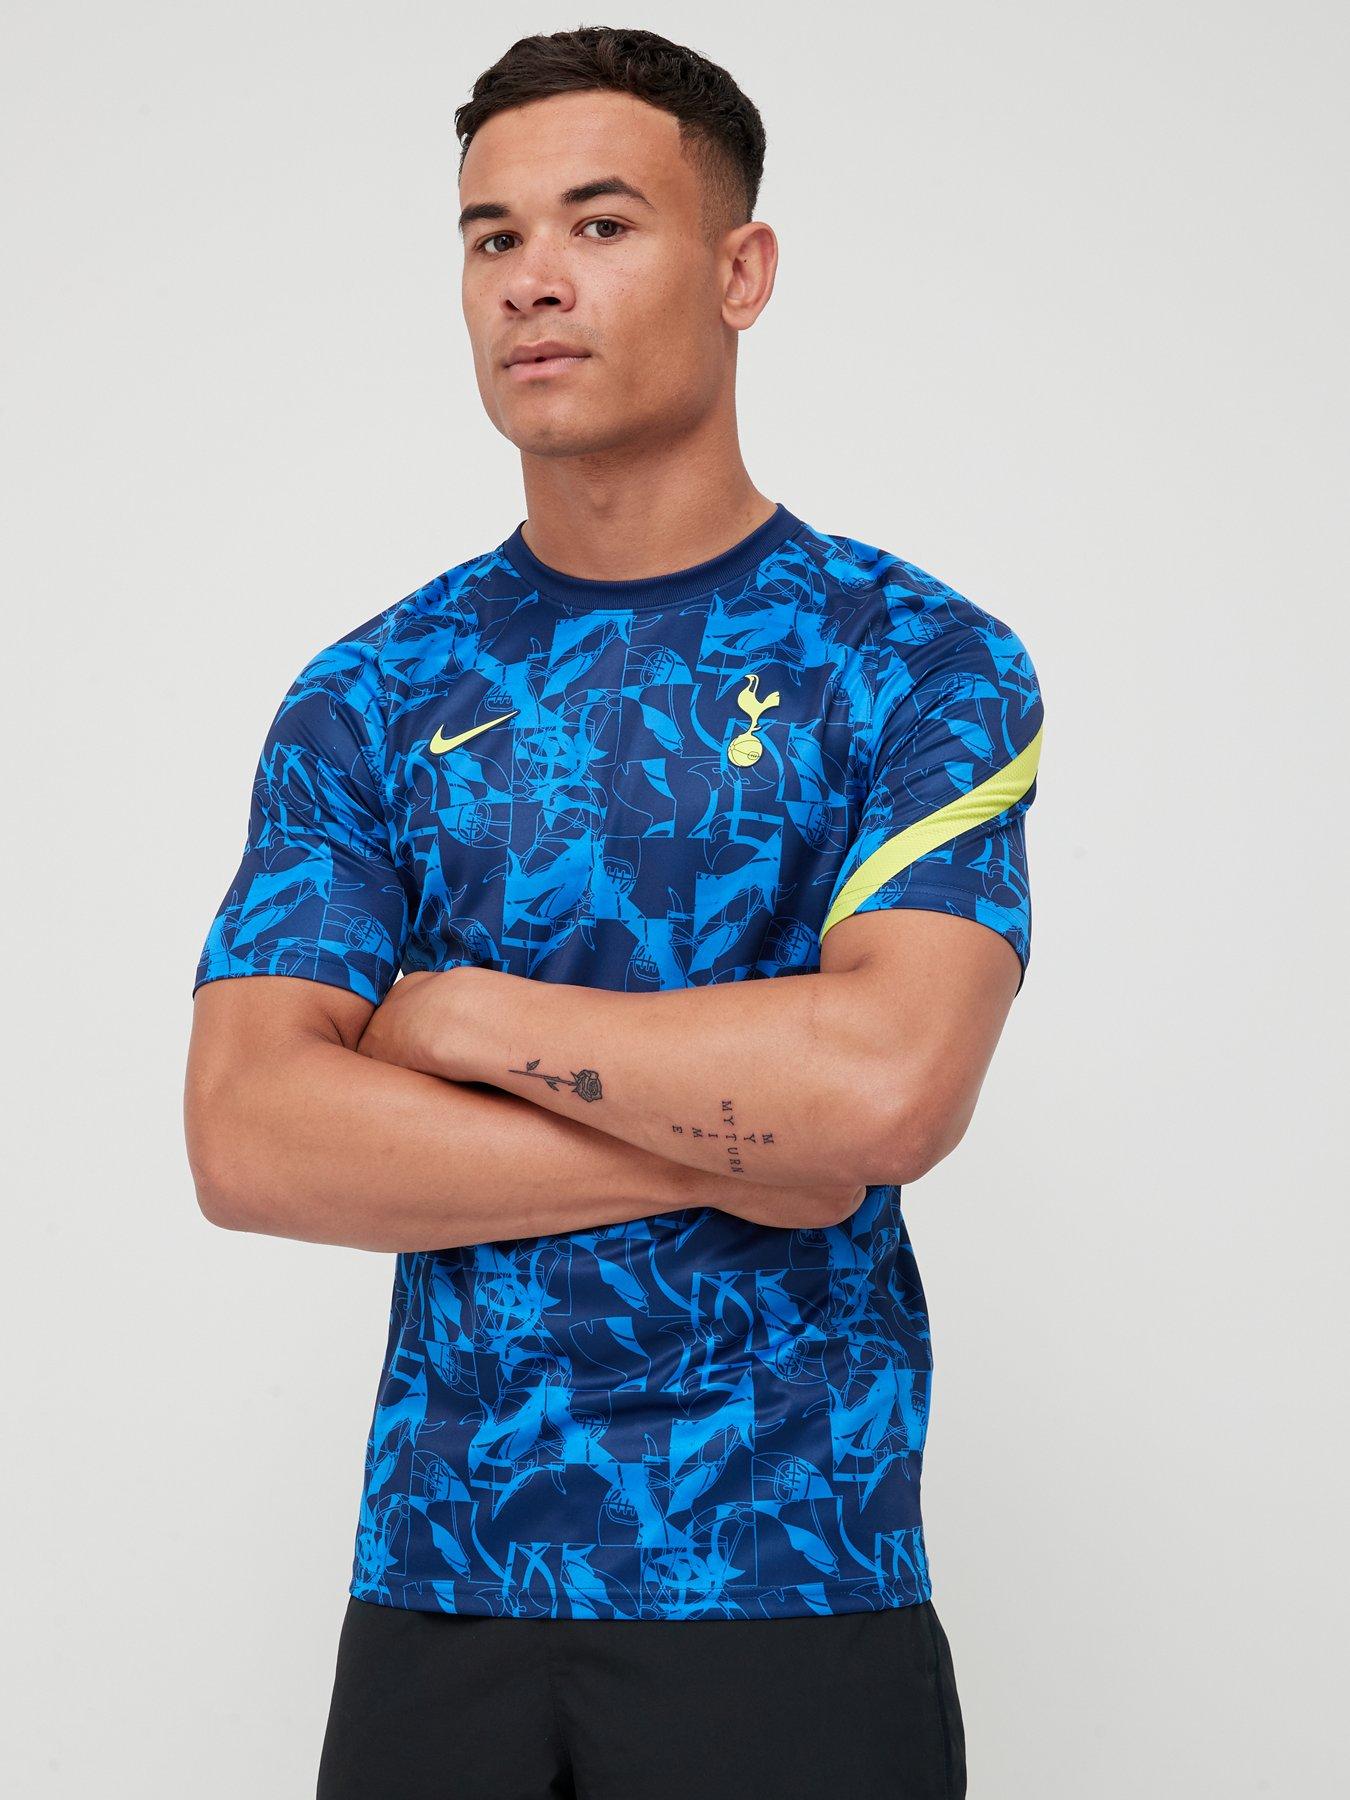 Men's Nike White Tottenham Hotspur Swoosh T-Shirt